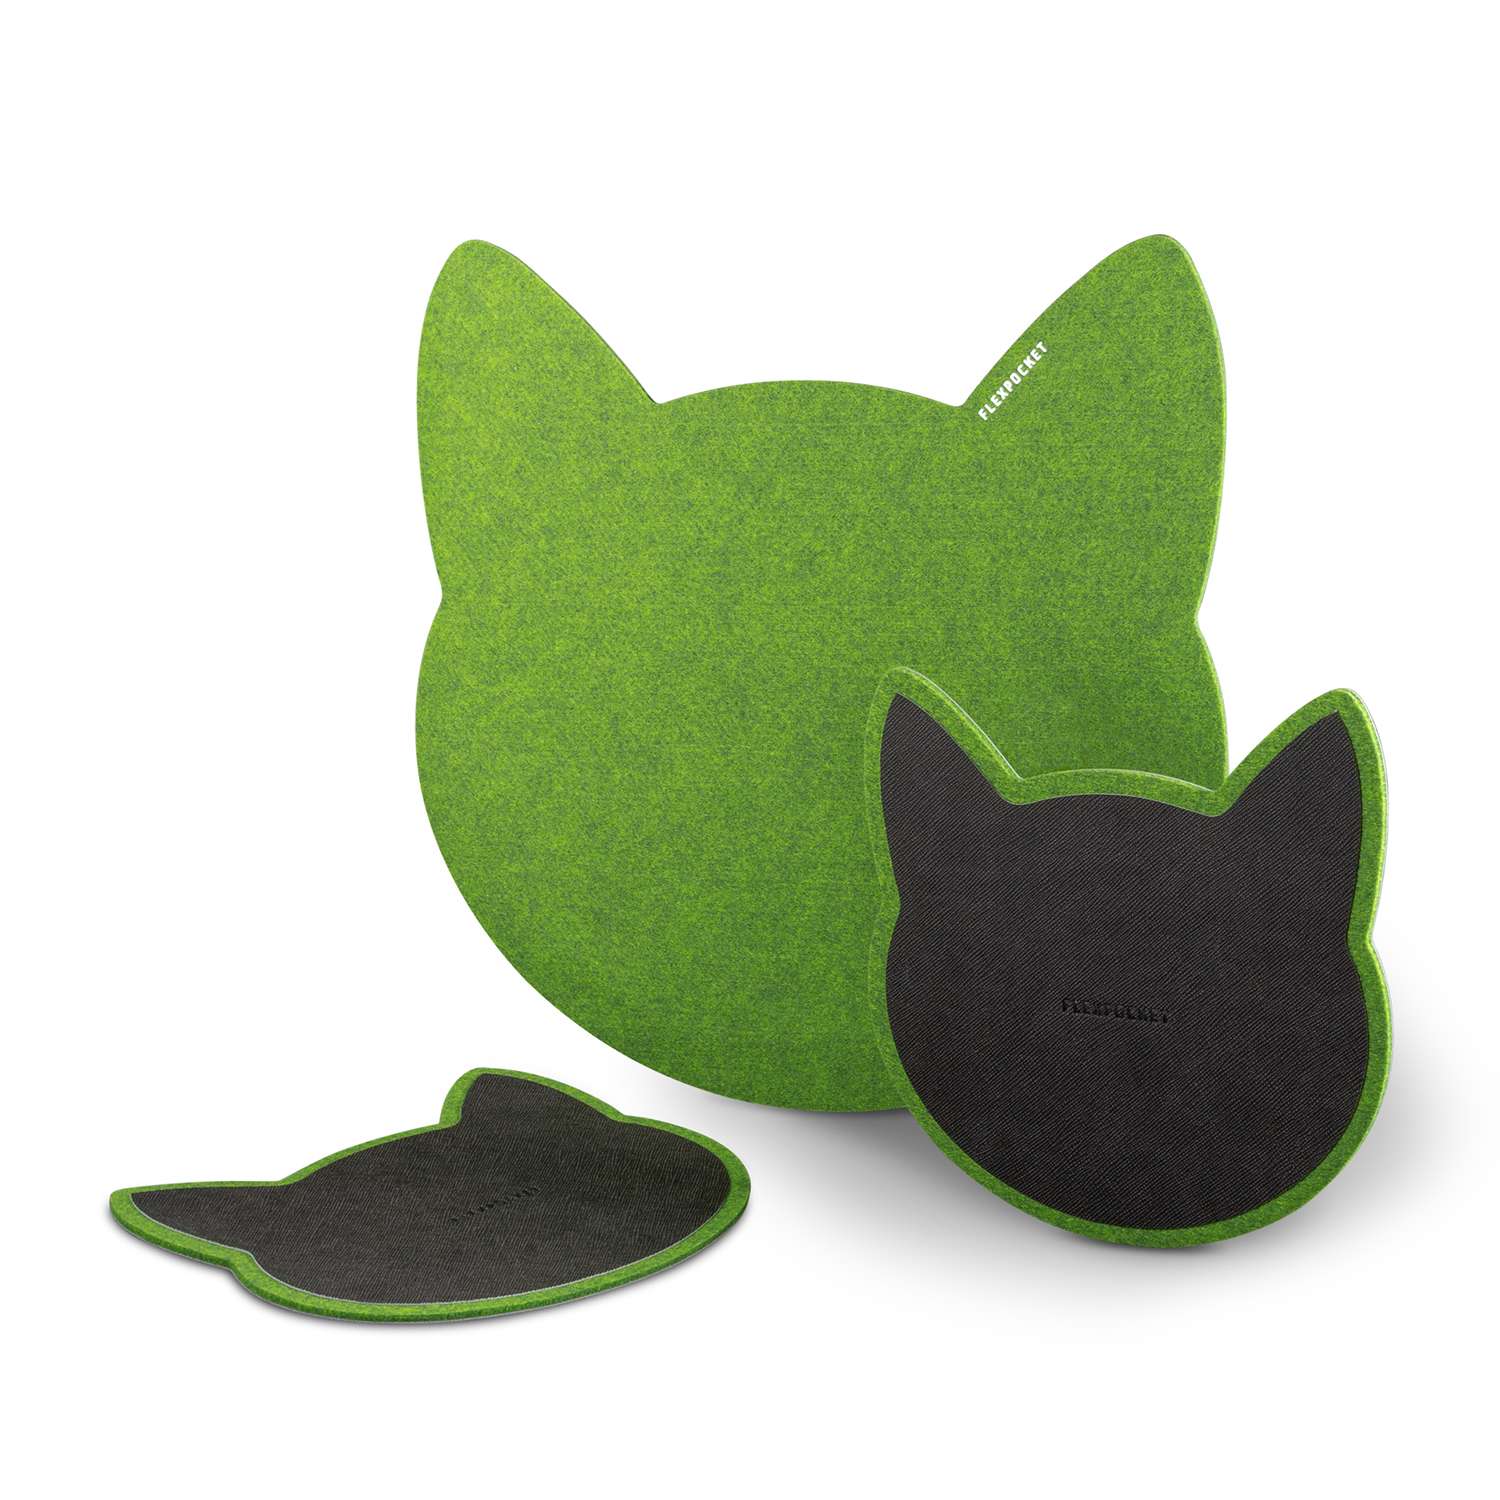 Настольный коврик Flexpocket для мыши в виде кошки + комплект с подставкой под кружку зеленый - фото 2